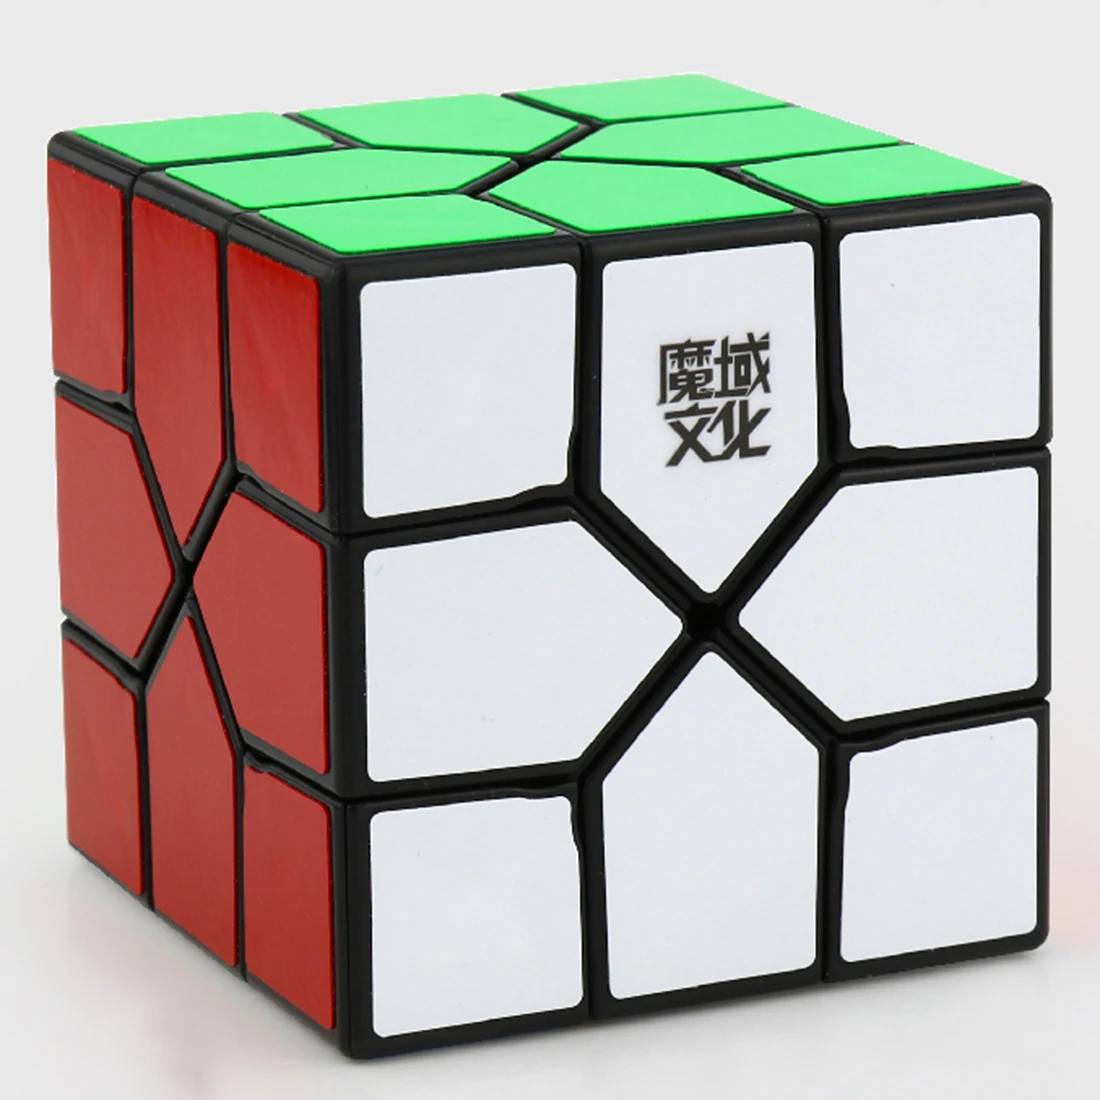 MoYu YJ8253 реди куб профессиональный дизайн аномалия 3x3 волшебный куб пазл игрушки для сложных-окрашенных